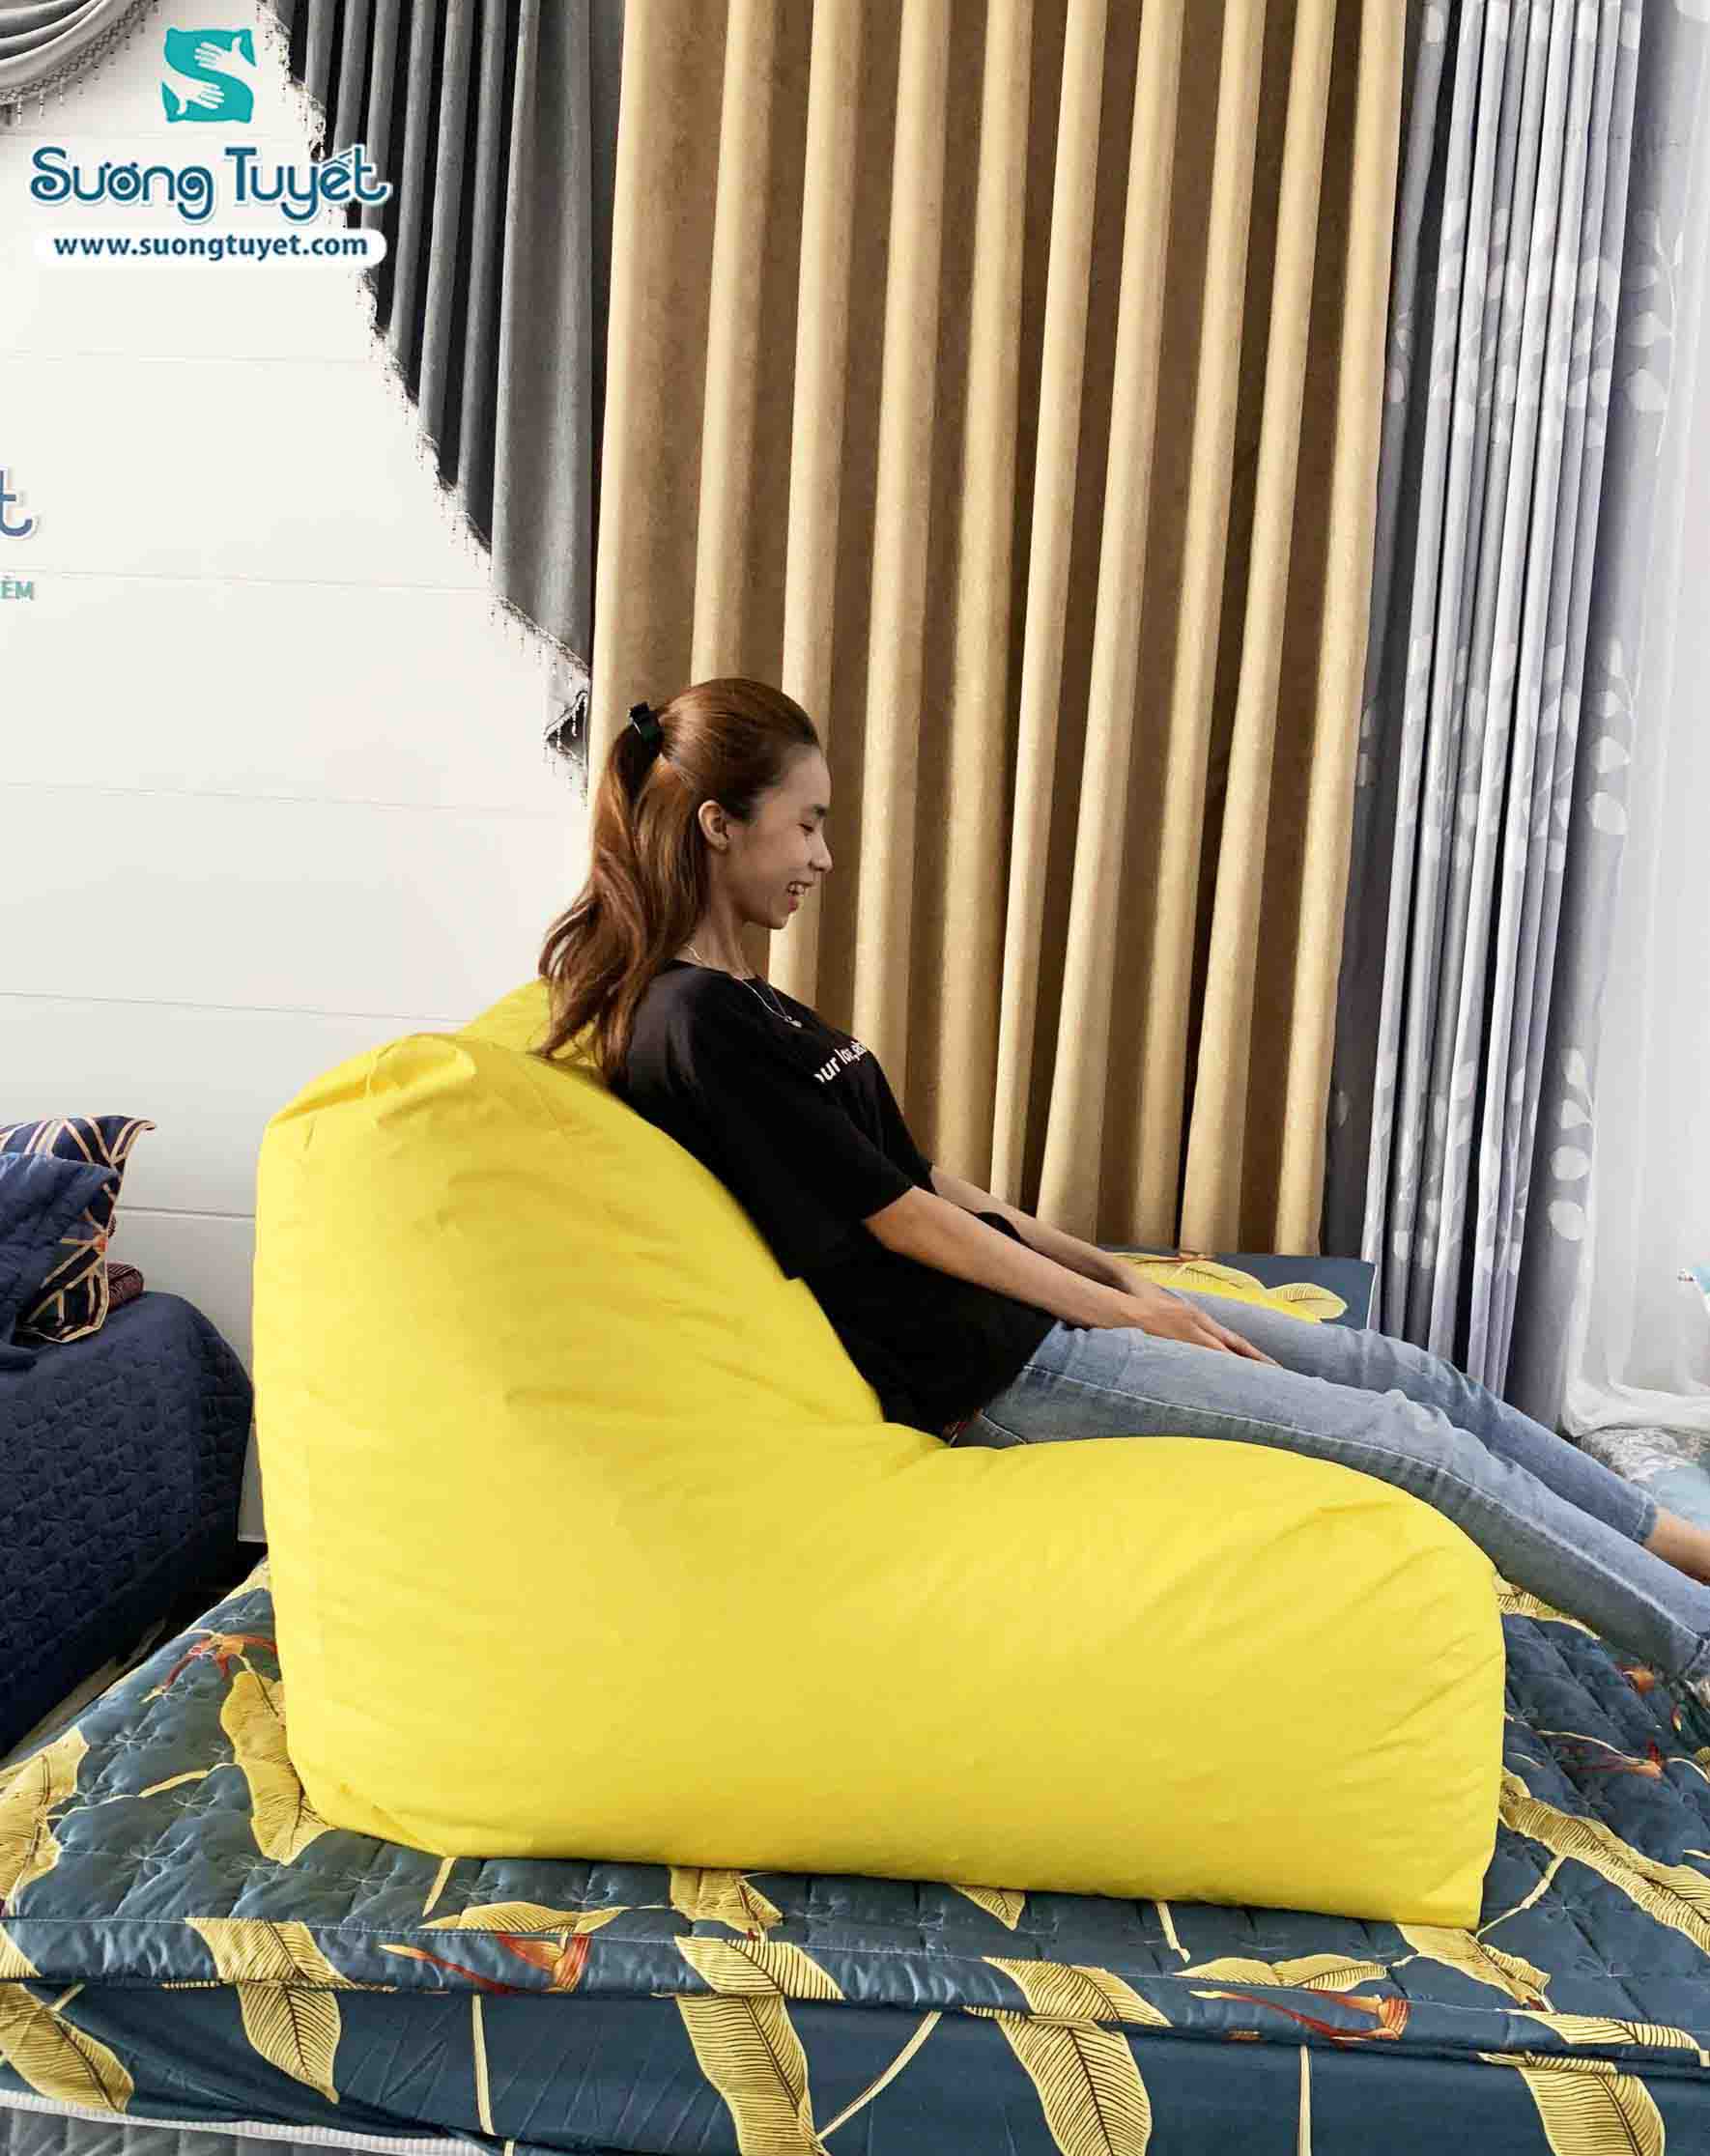 Ghế lười sofa bạn có thể chọn chất liệu vải chống thấm hoặc cotton.